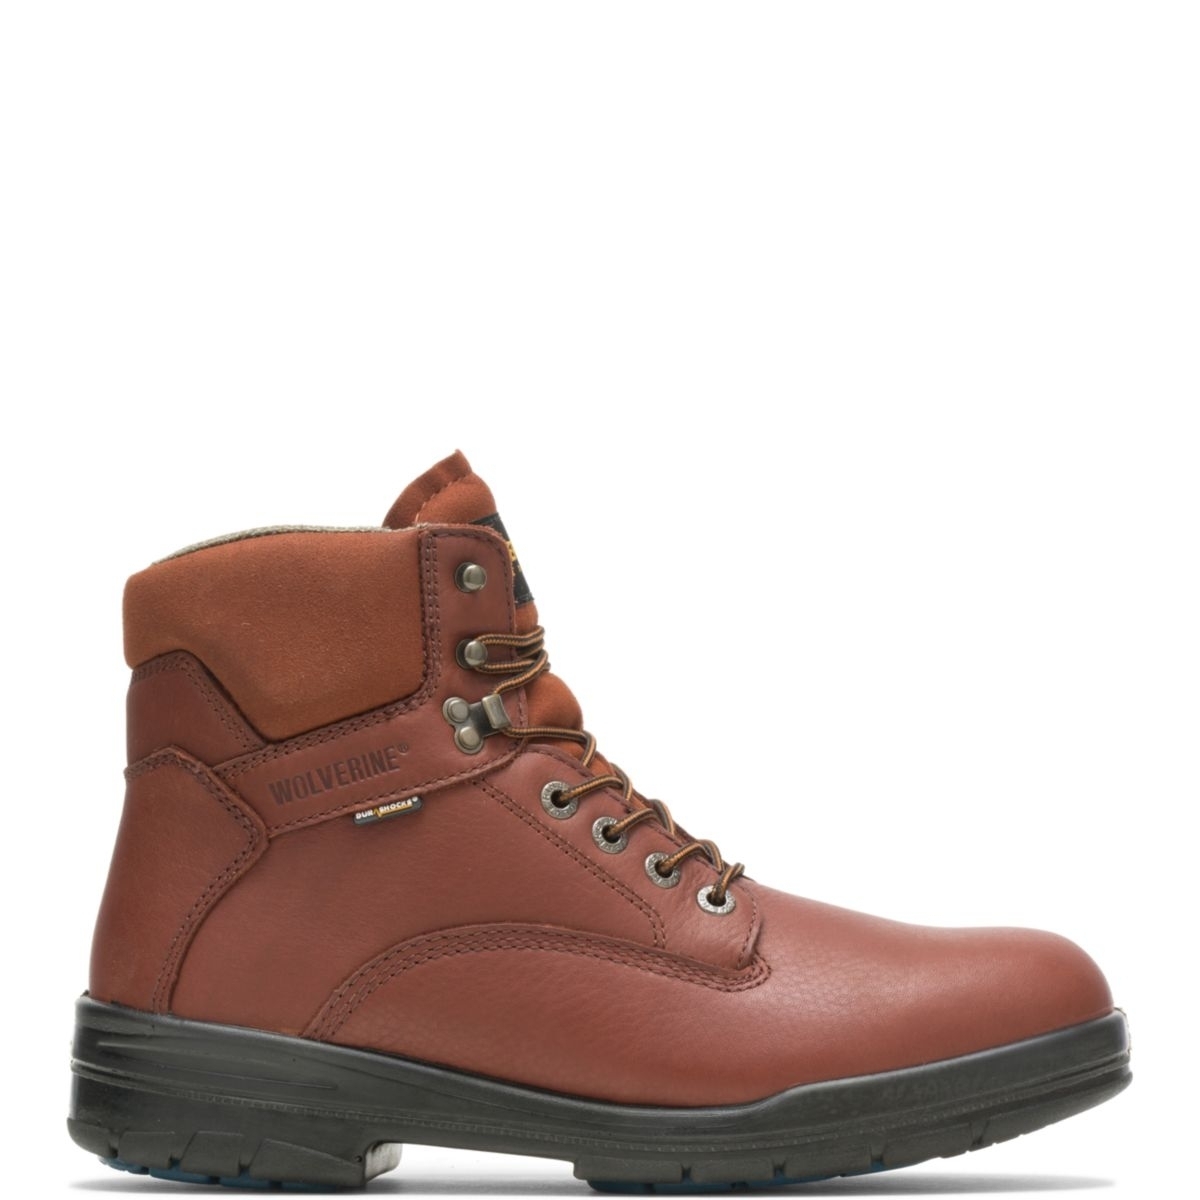 WOLVERINE Men's 6 DuraShocksÂ® Steel Toe Direct-Attach Work Boot Brown - W03120 BROWN - BROWN, 8 Wide